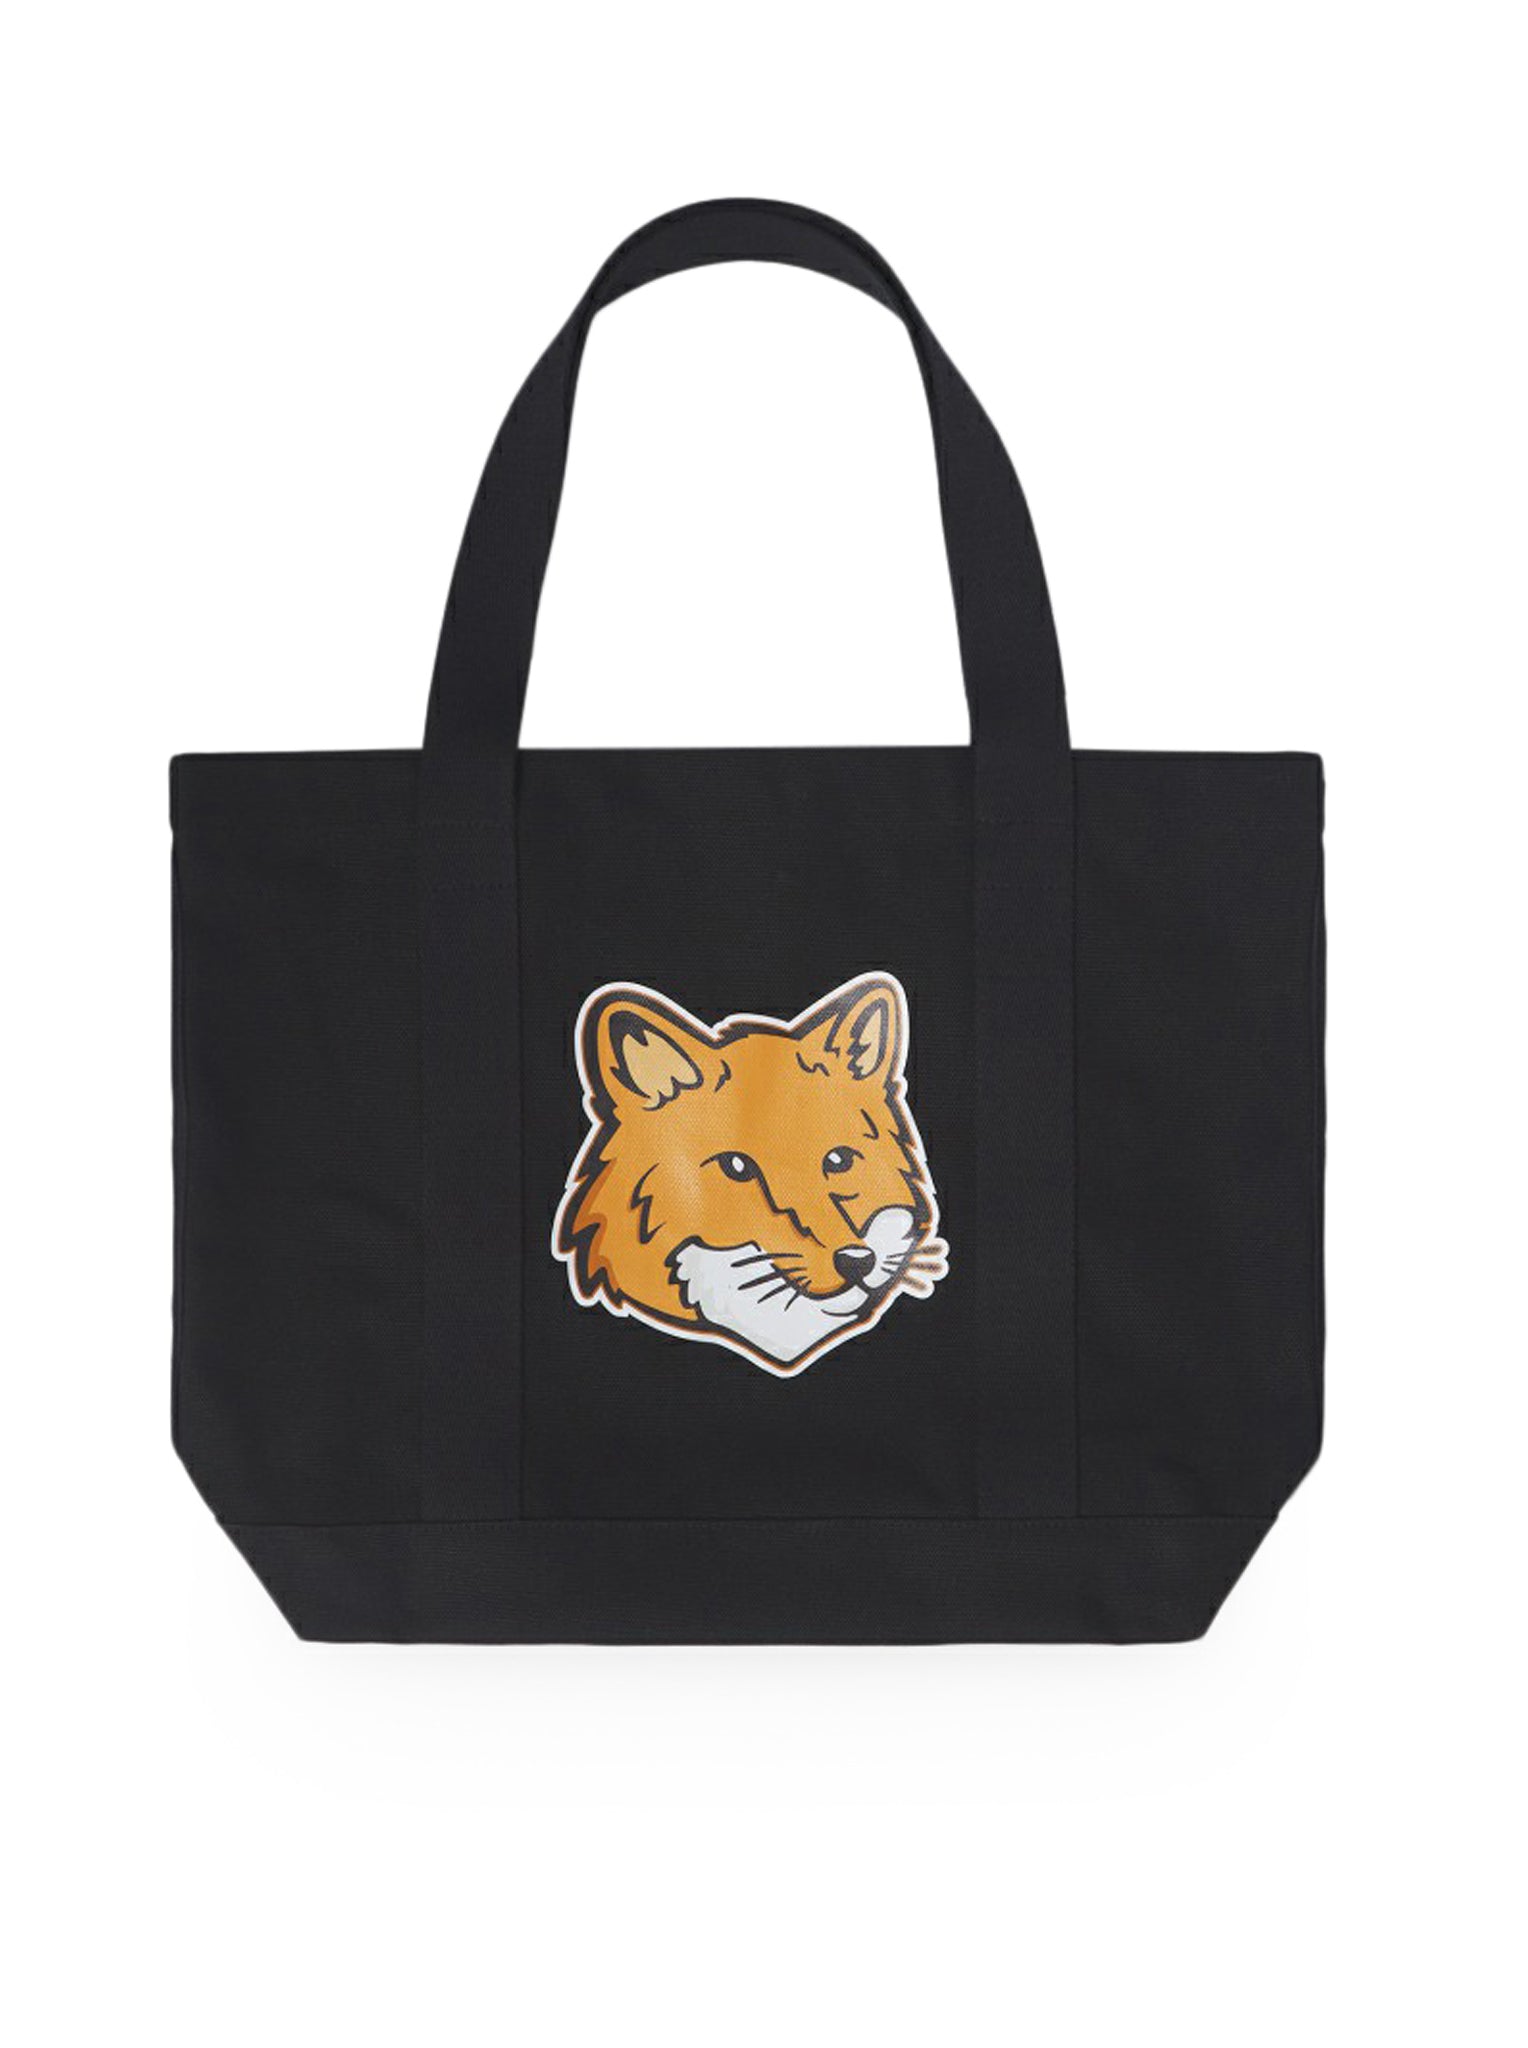 FOX HEAD TOTE BAG